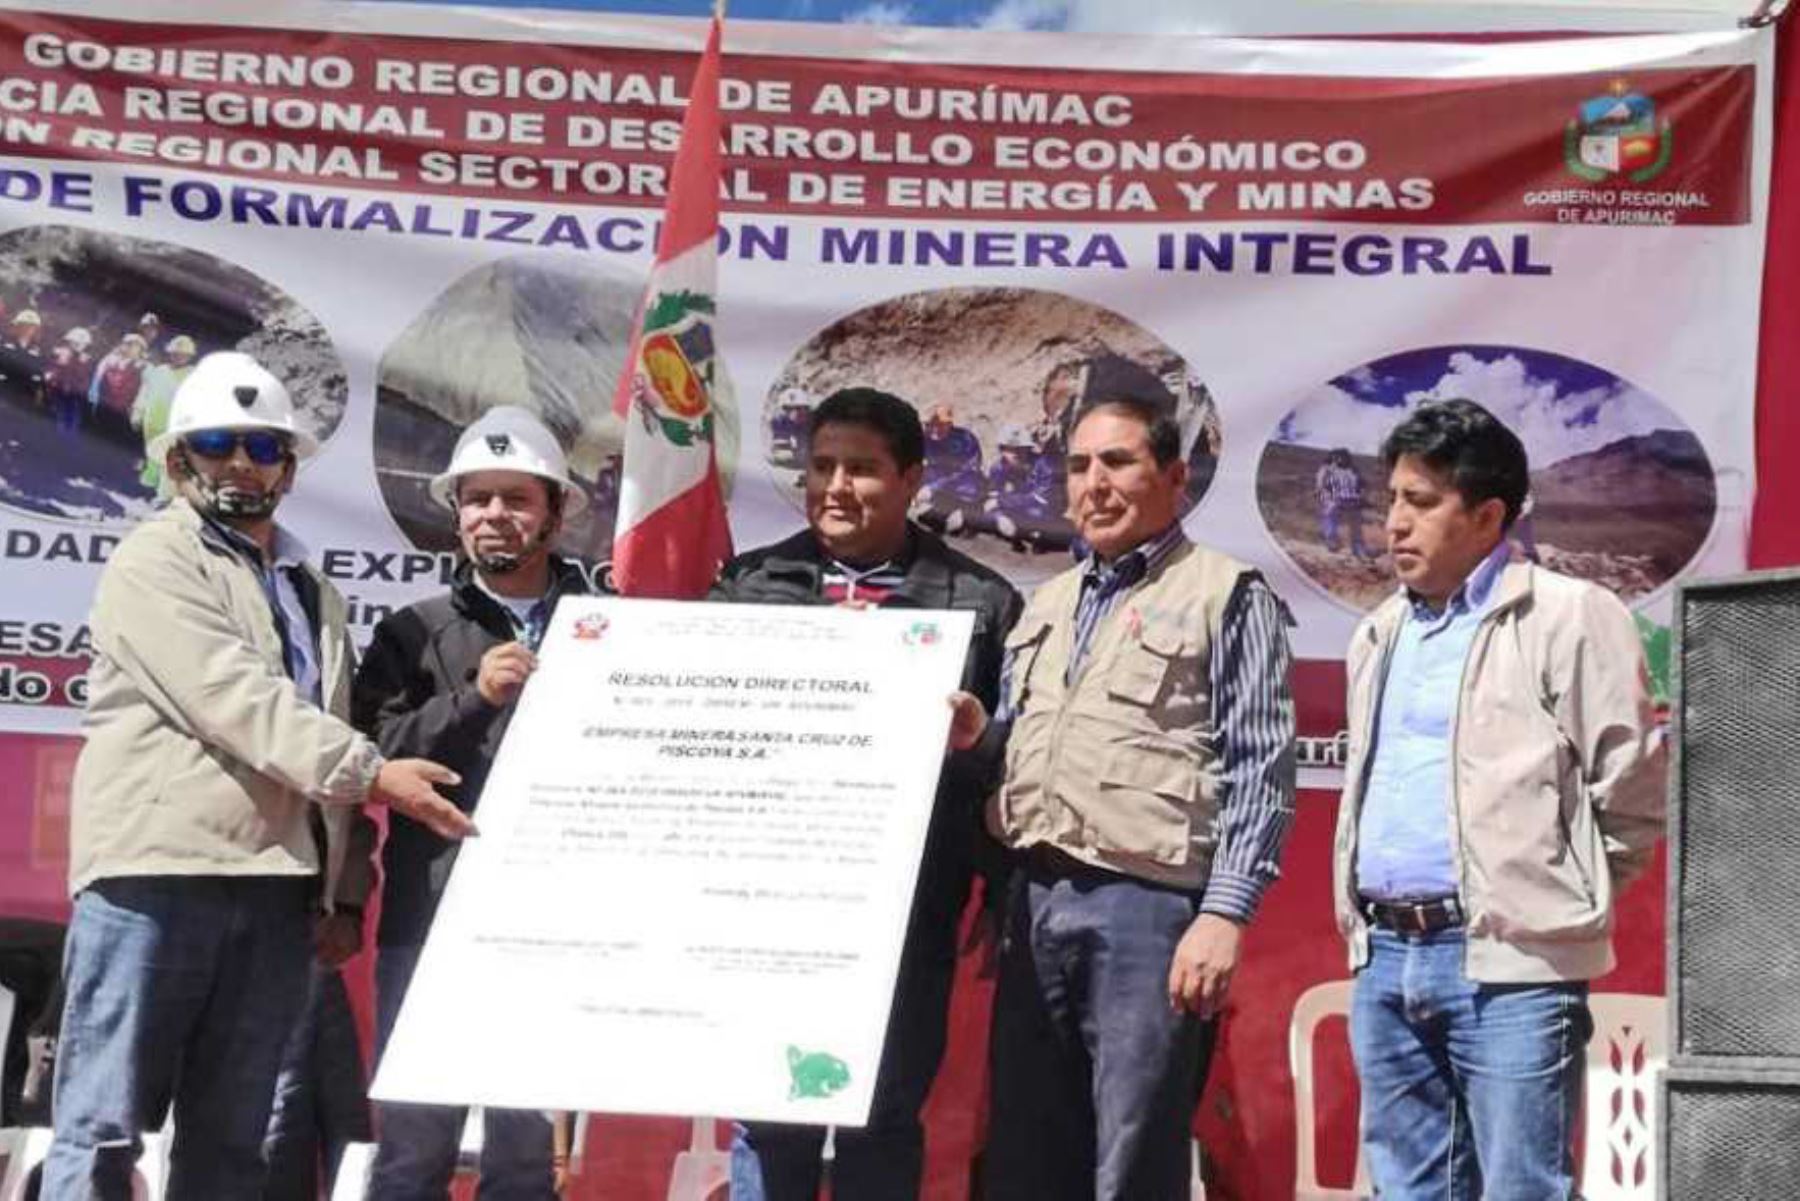 El Ministerio de Energía y Minas (Minem) continúa impulsando la formalización de los pequeños productores mineros y productores mineros artesanales en todo el país para brindarles oportunidades de inserción económica respetando el medio ambiente.